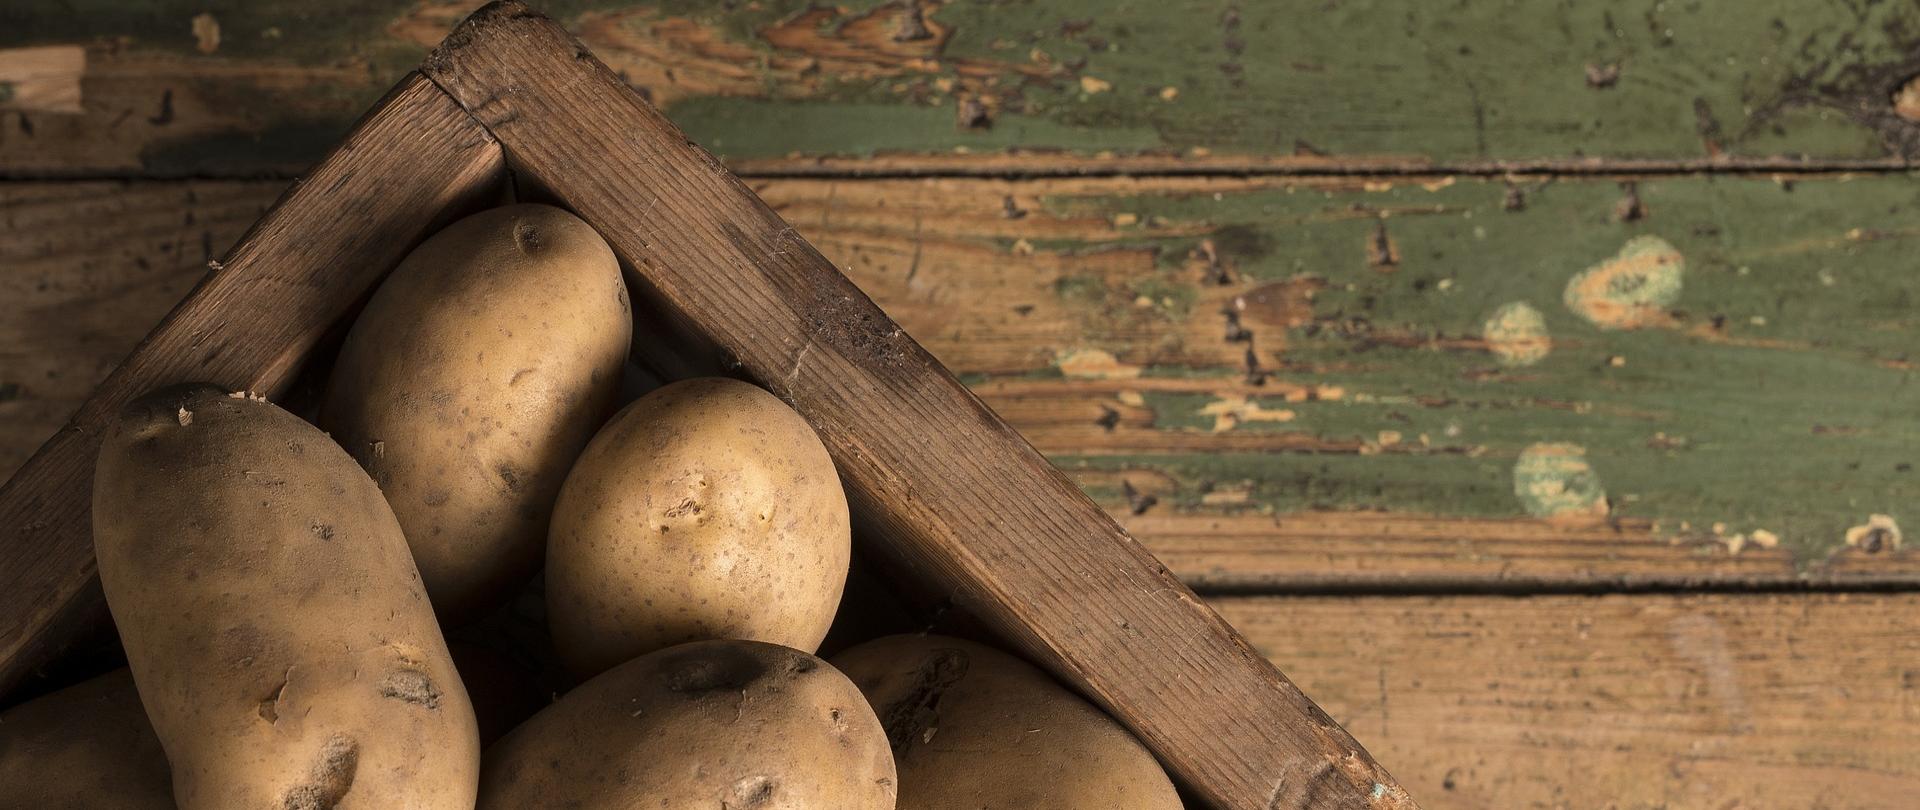 Ziemniaki w drewnianej skrzynce stoją na drewnianym podłożu.